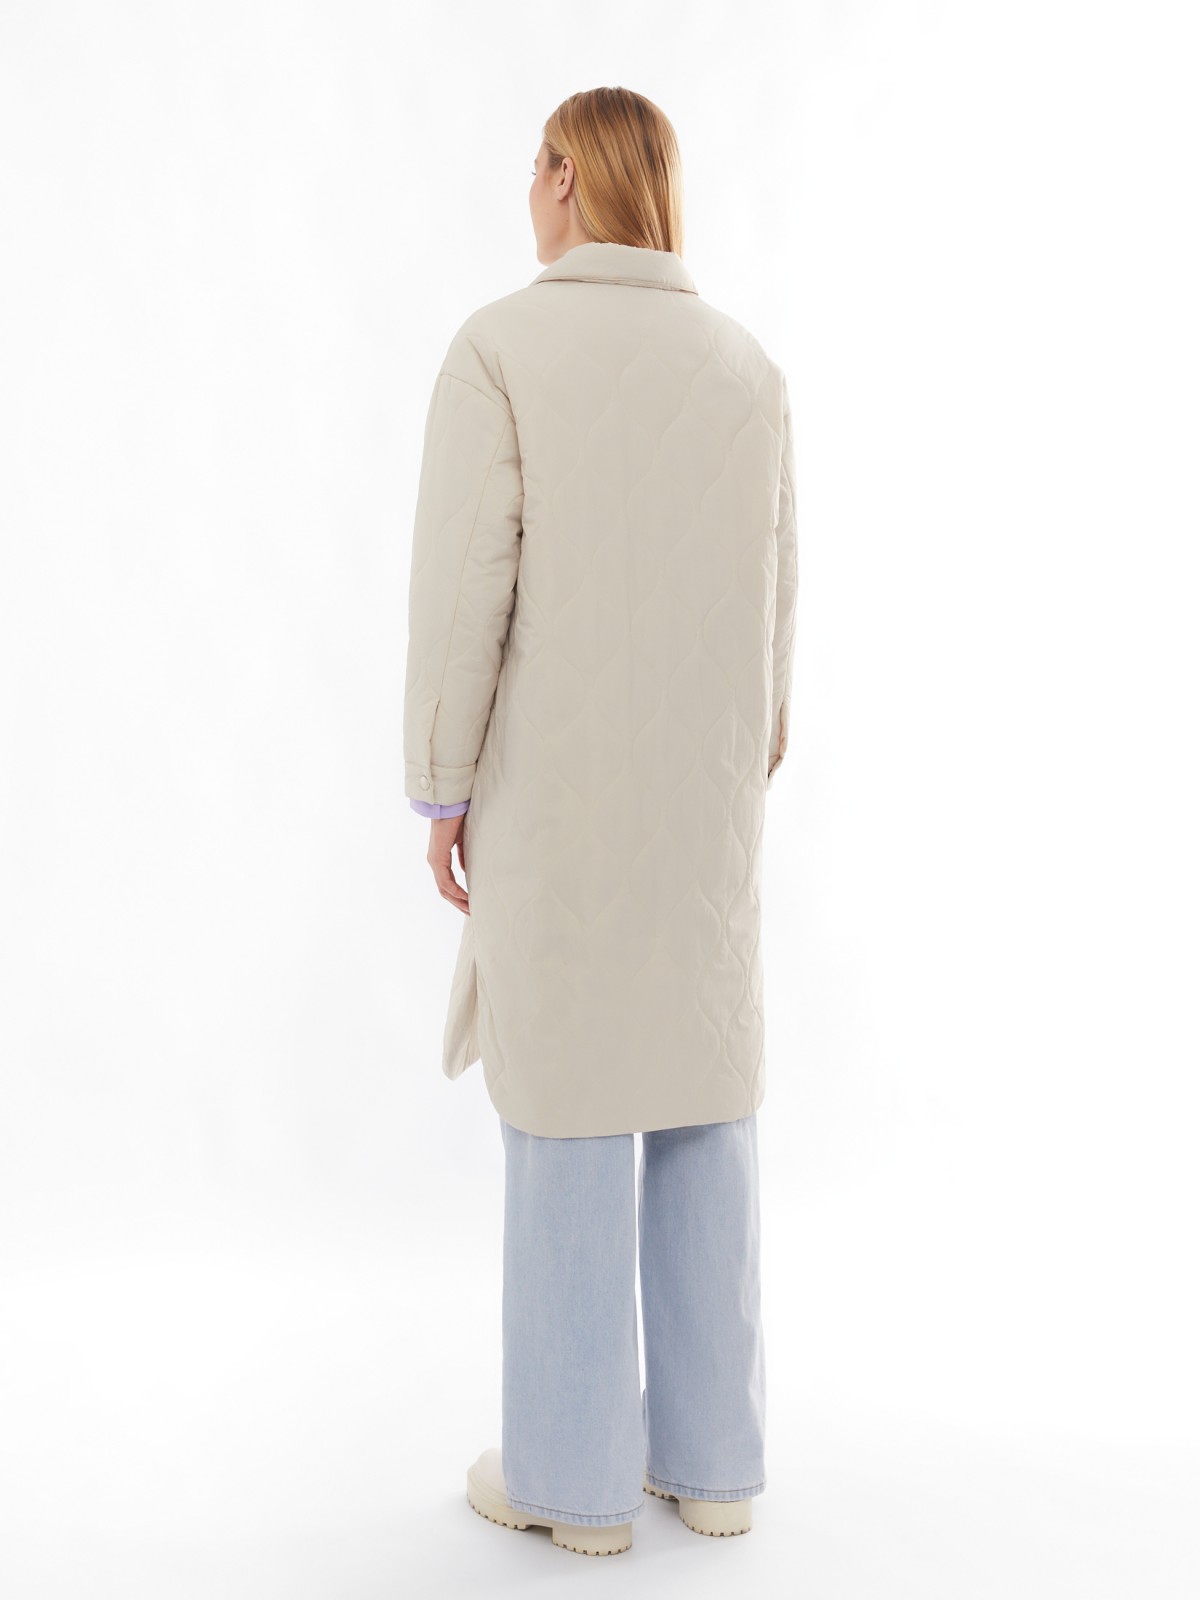 Длинное стёганое пальто-рубашка из нейлона на синтепоне zolla 024135202054, цвет молоко, размер XS - фото 6